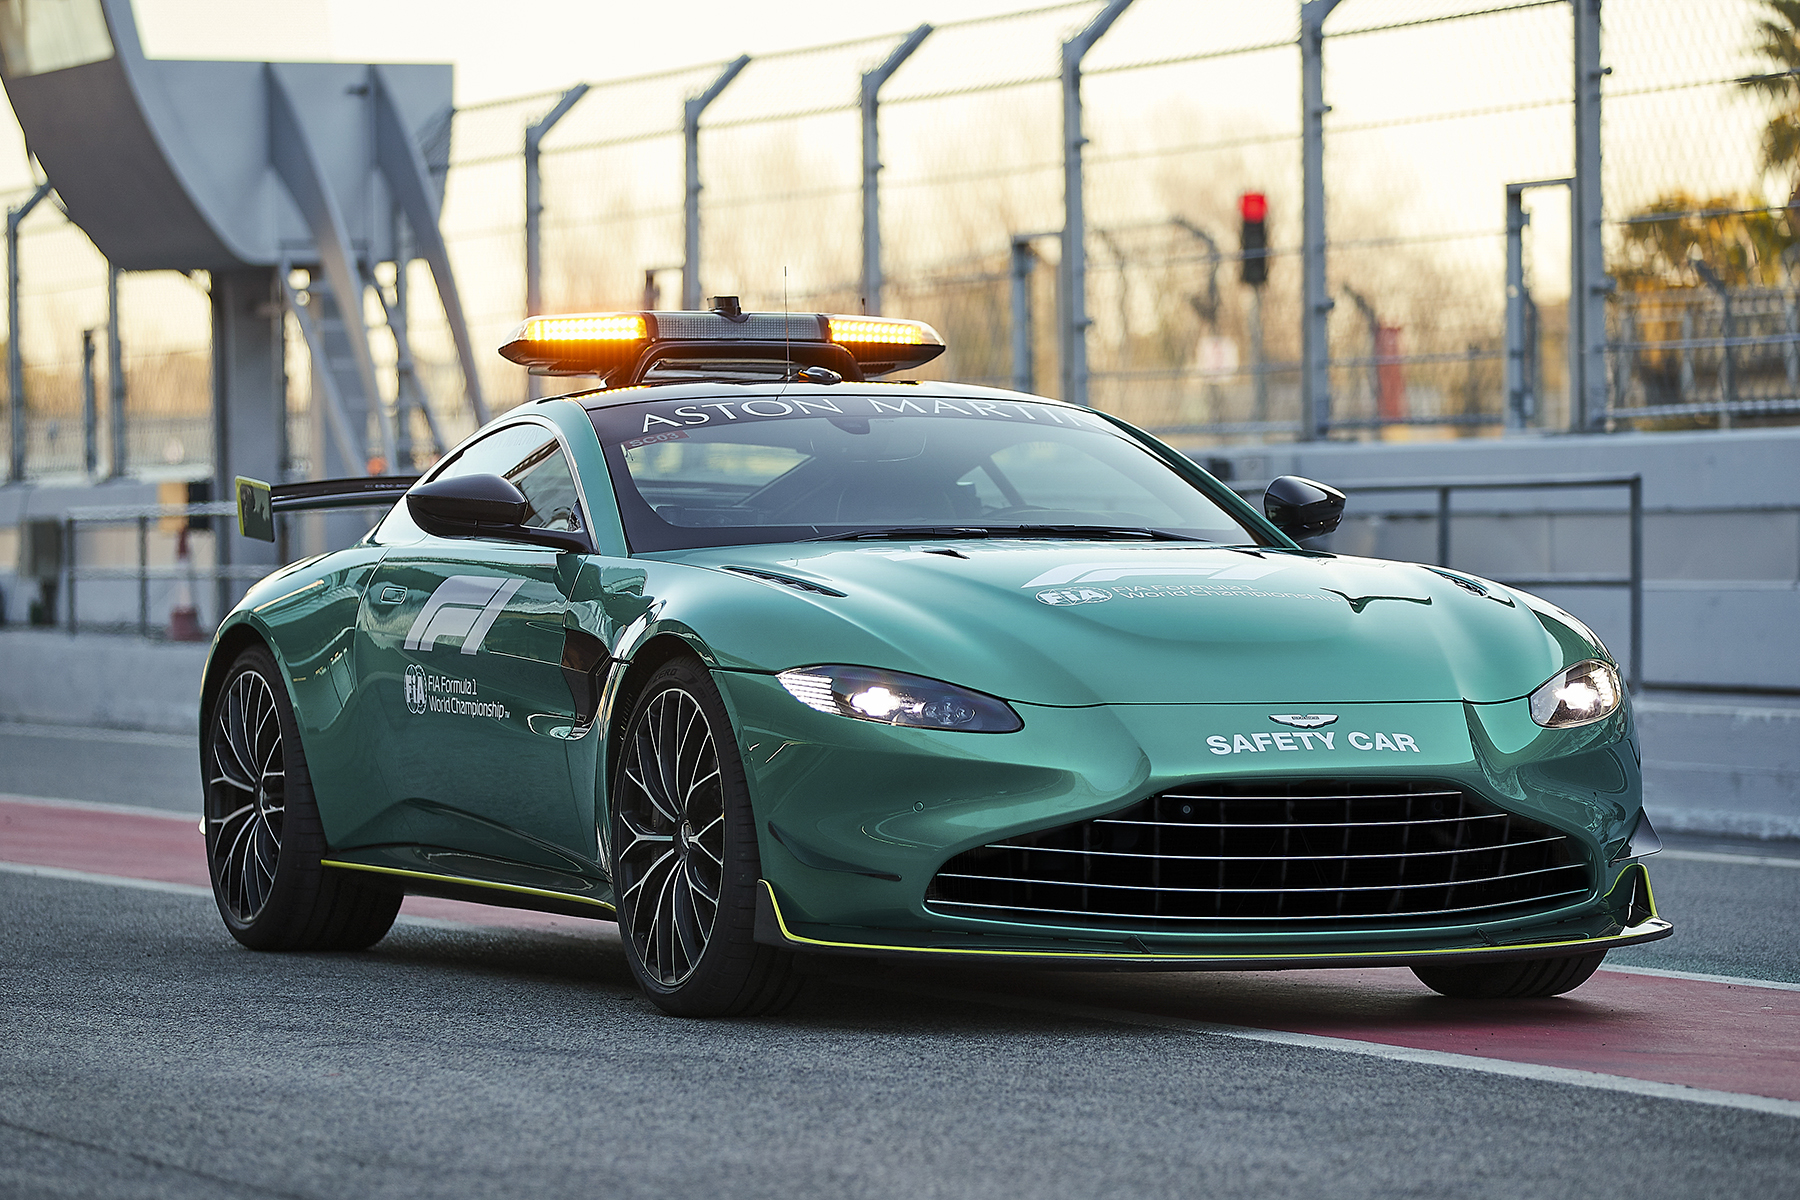 Mercedes-Pilot kritisiert Safetycar von Aston Martin